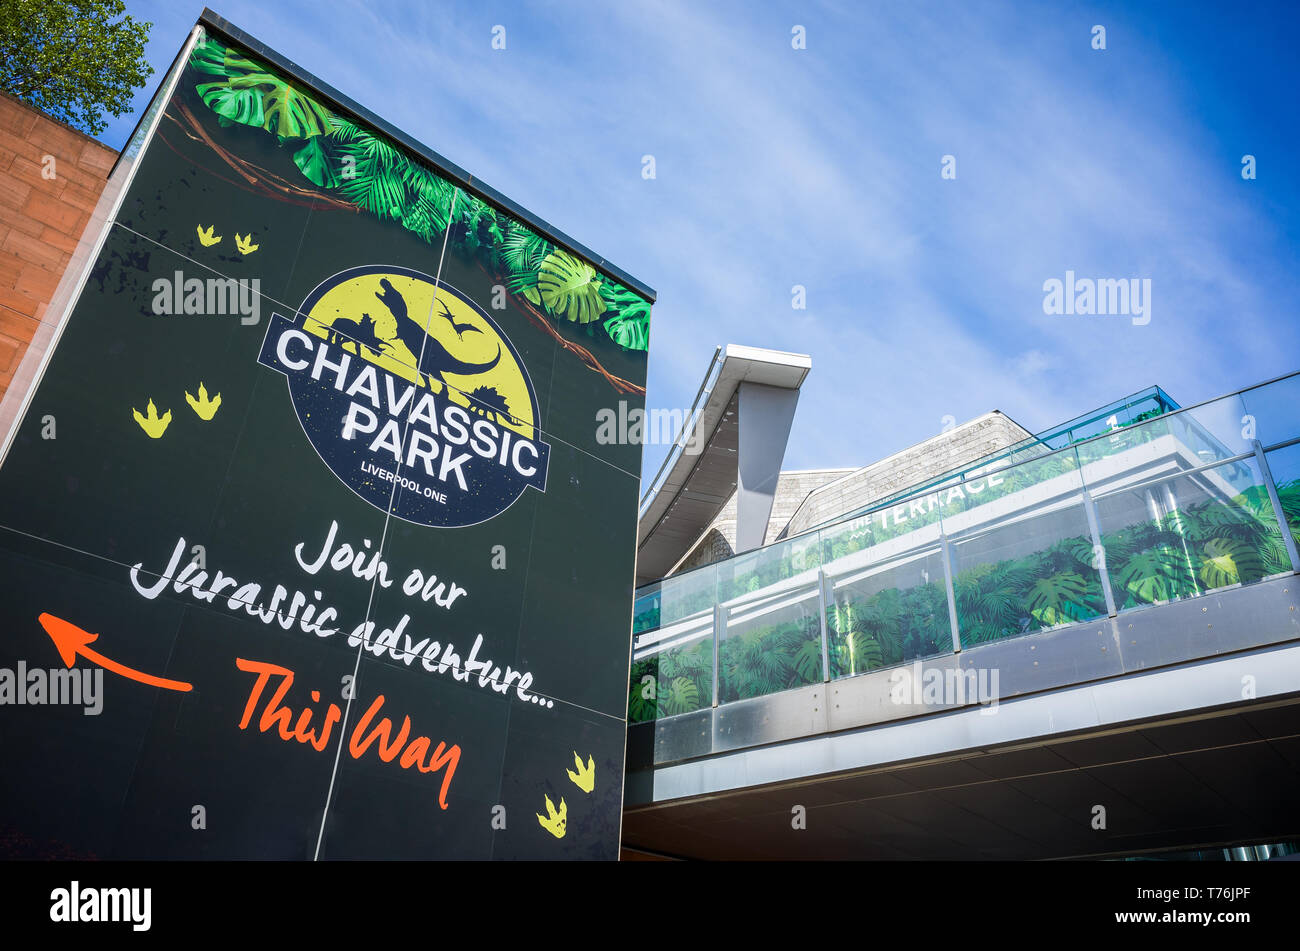 La publicité pour le printemps 2019 Chavassic' 'Parc Dinosaur Park au centre commercial Liverpool One, UK. Banque D'Images